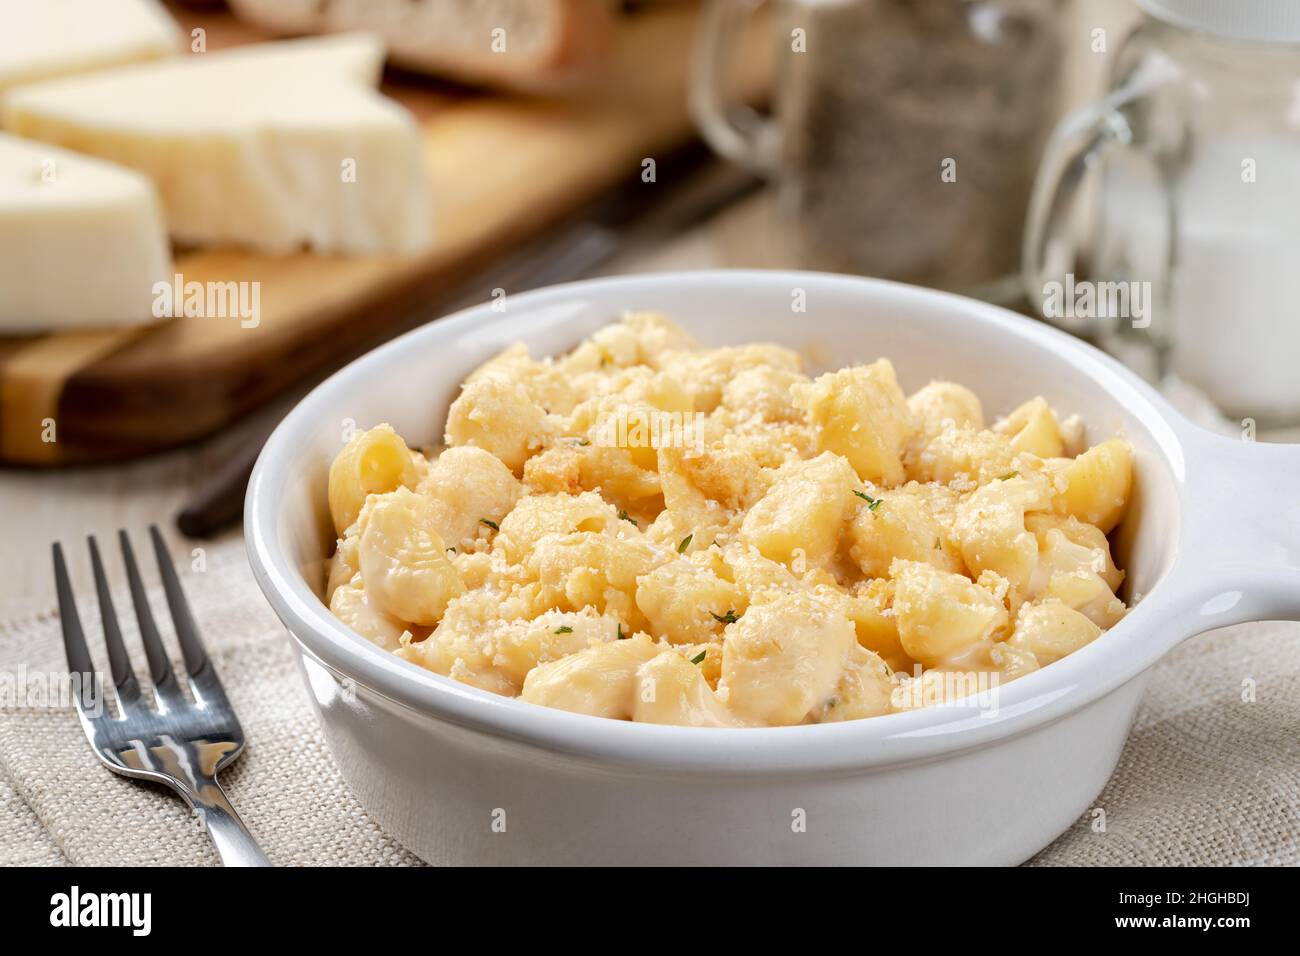 Primo piano di macaroni e formaggio cosparsi di parmigiano in una teglia bianca su un rustico tavolo di legno Foto Stock